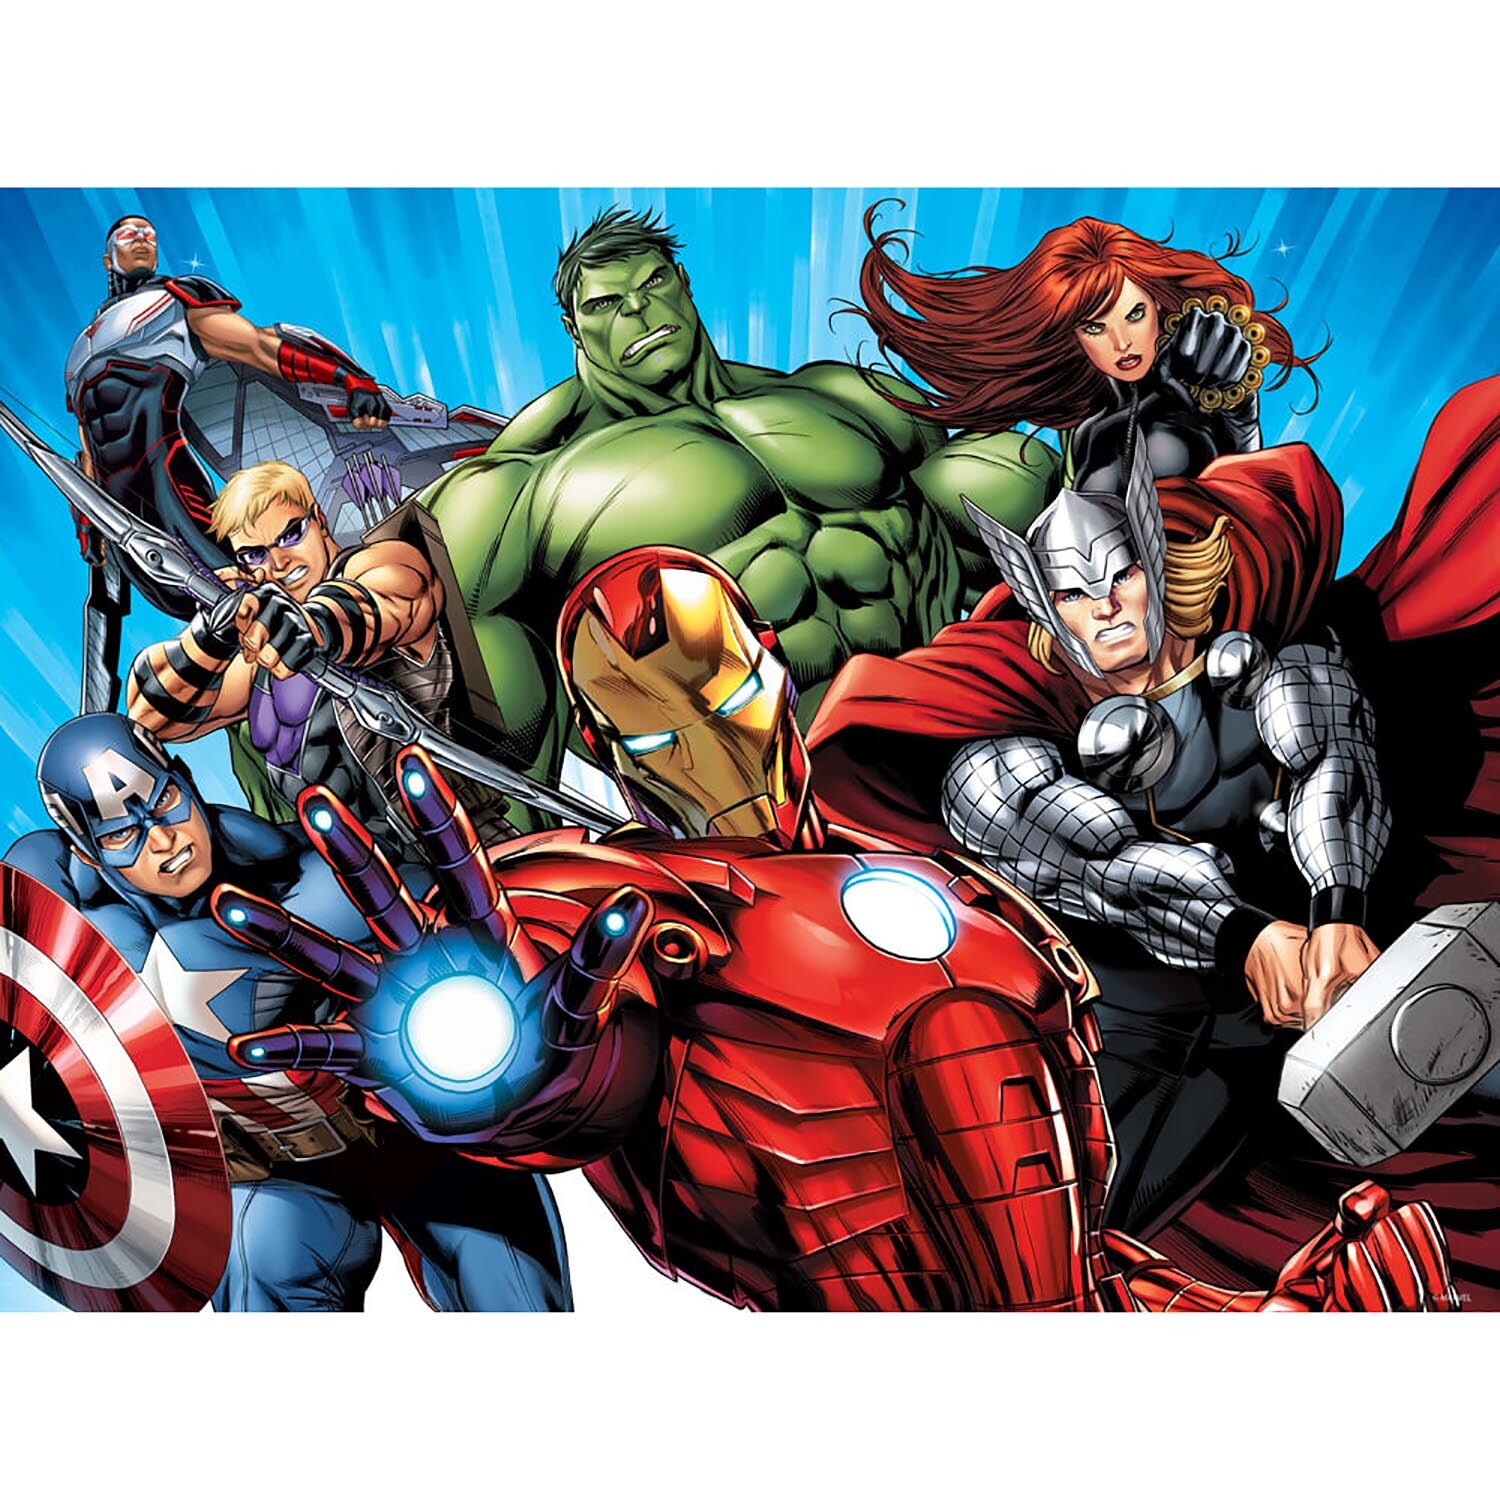 500-Piece Marvel Avengers Prime 3D Puzzle Image 2